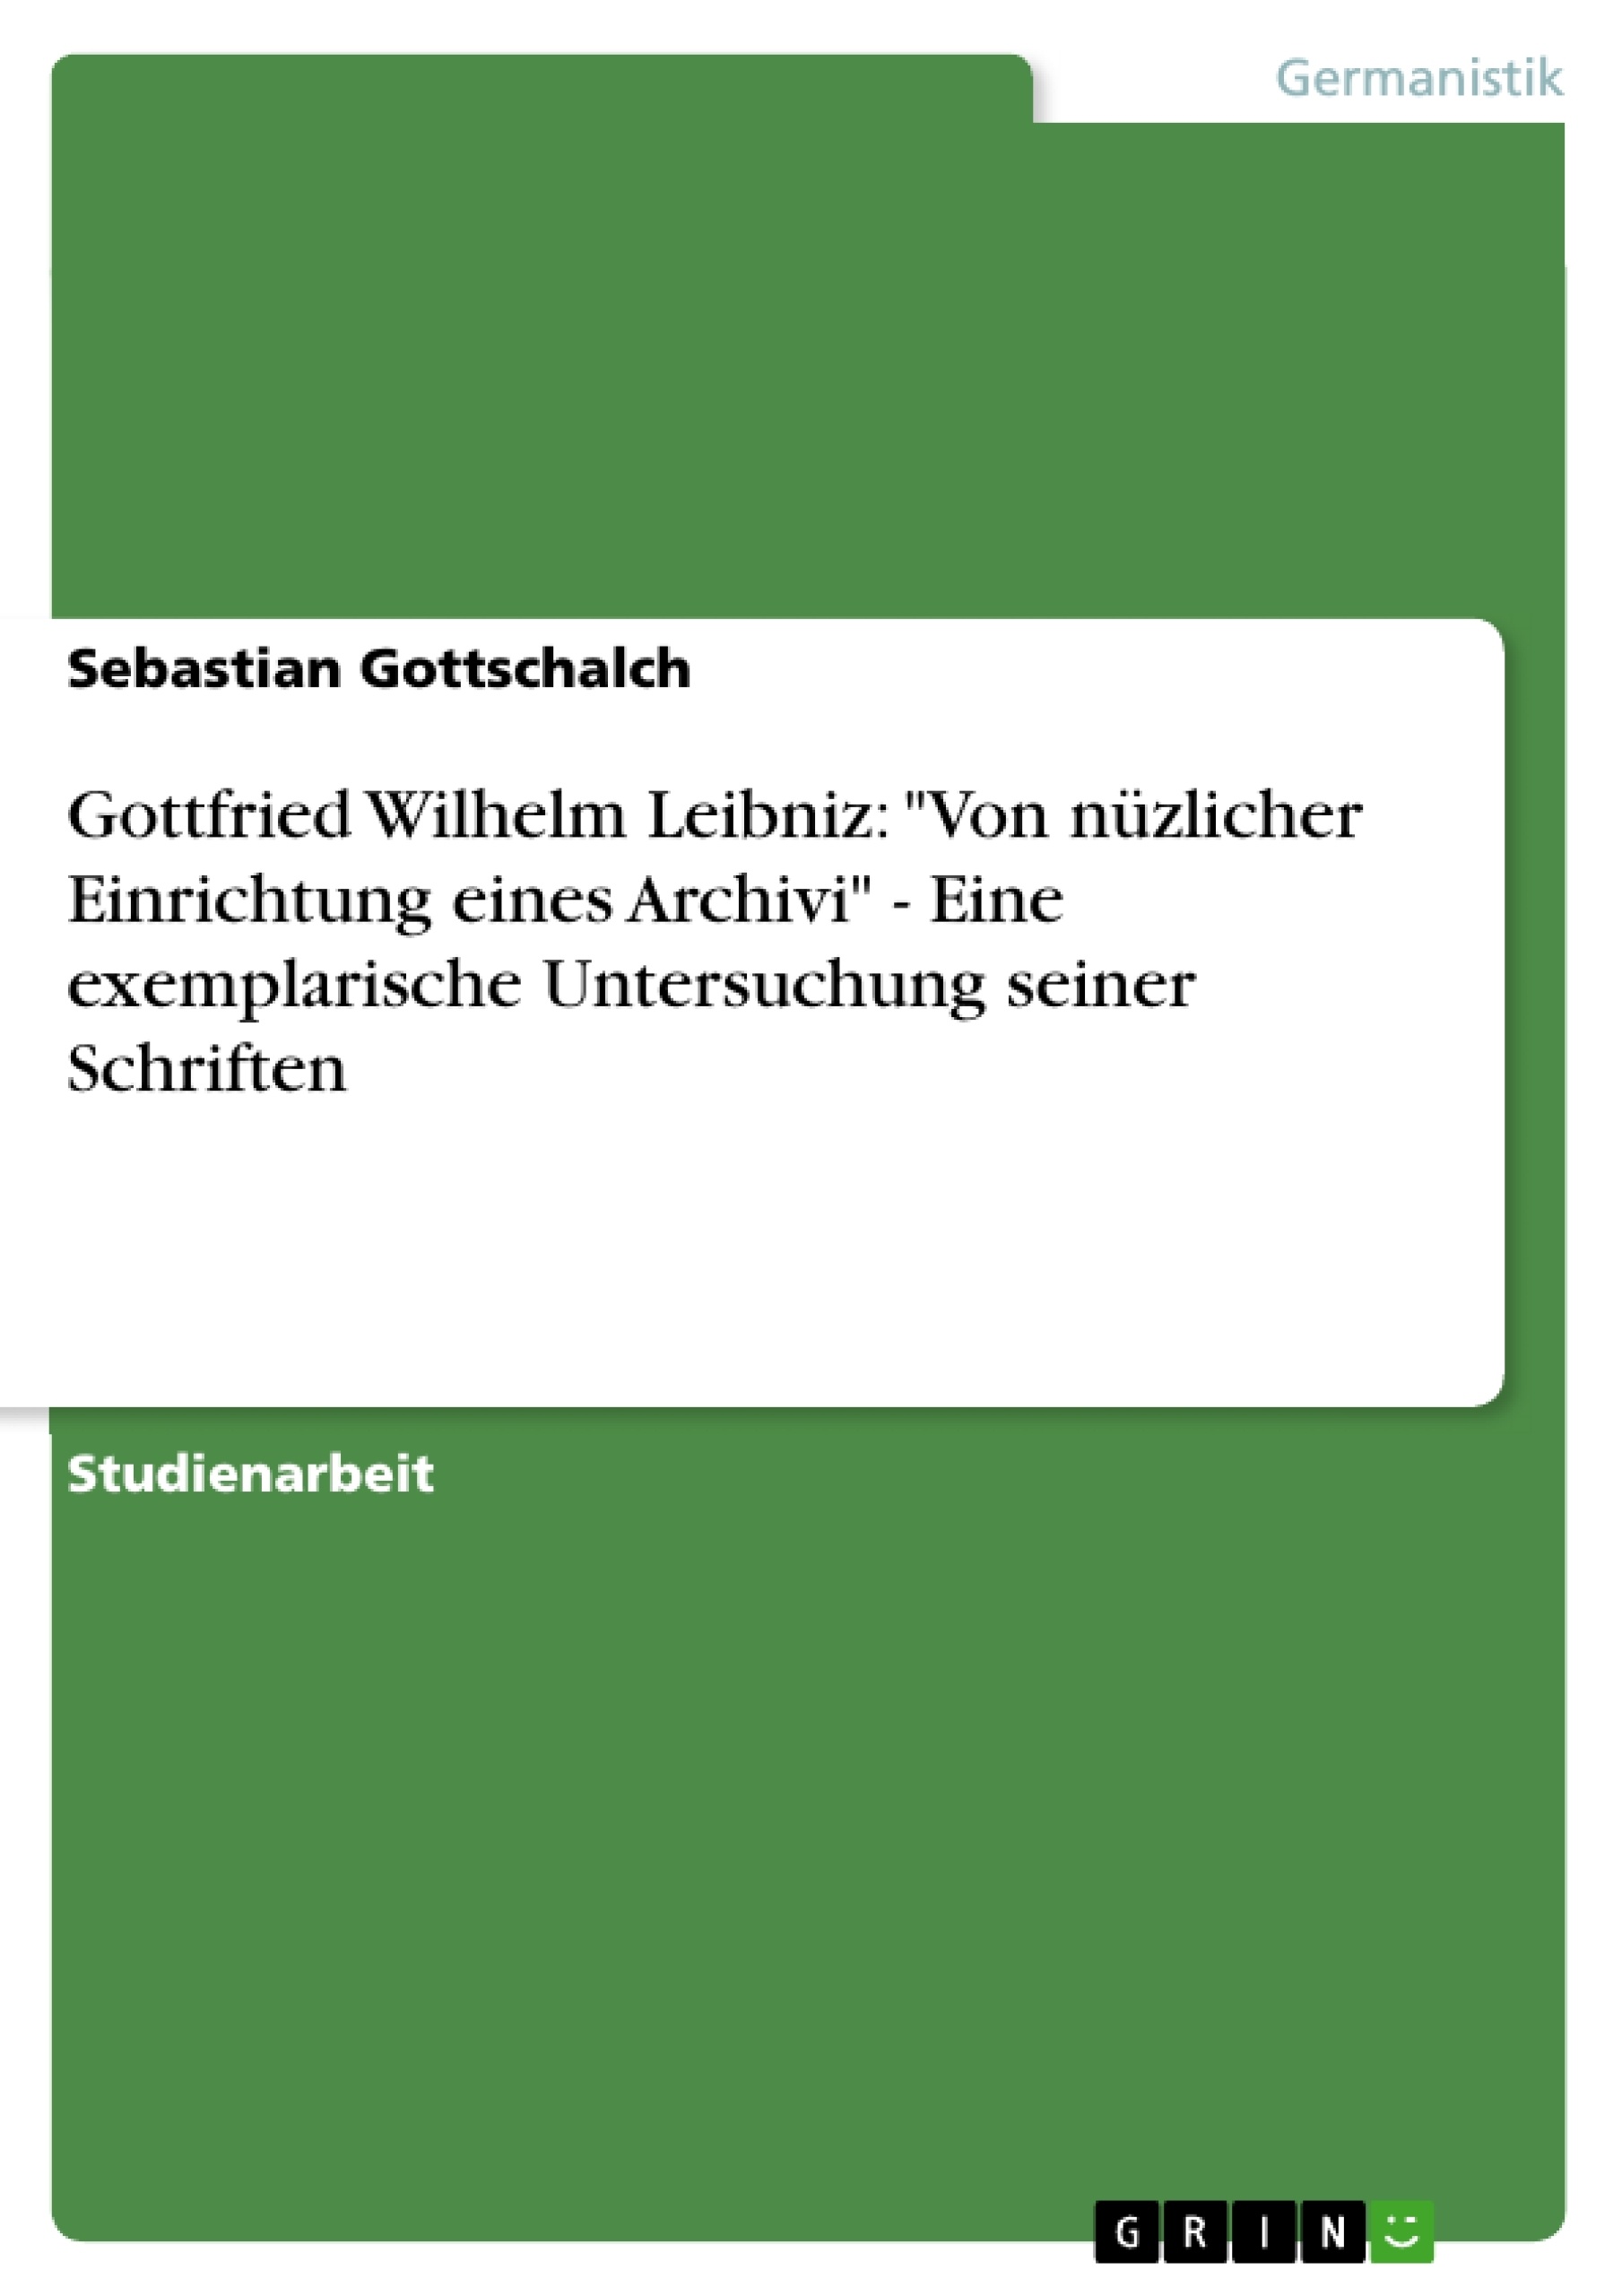 Título: Gottfried Wilhelm Leibniz: "Von nüzlicher Einrichtung eines Archivi" - Eine exemplarische Untersuchung seiner Schriften